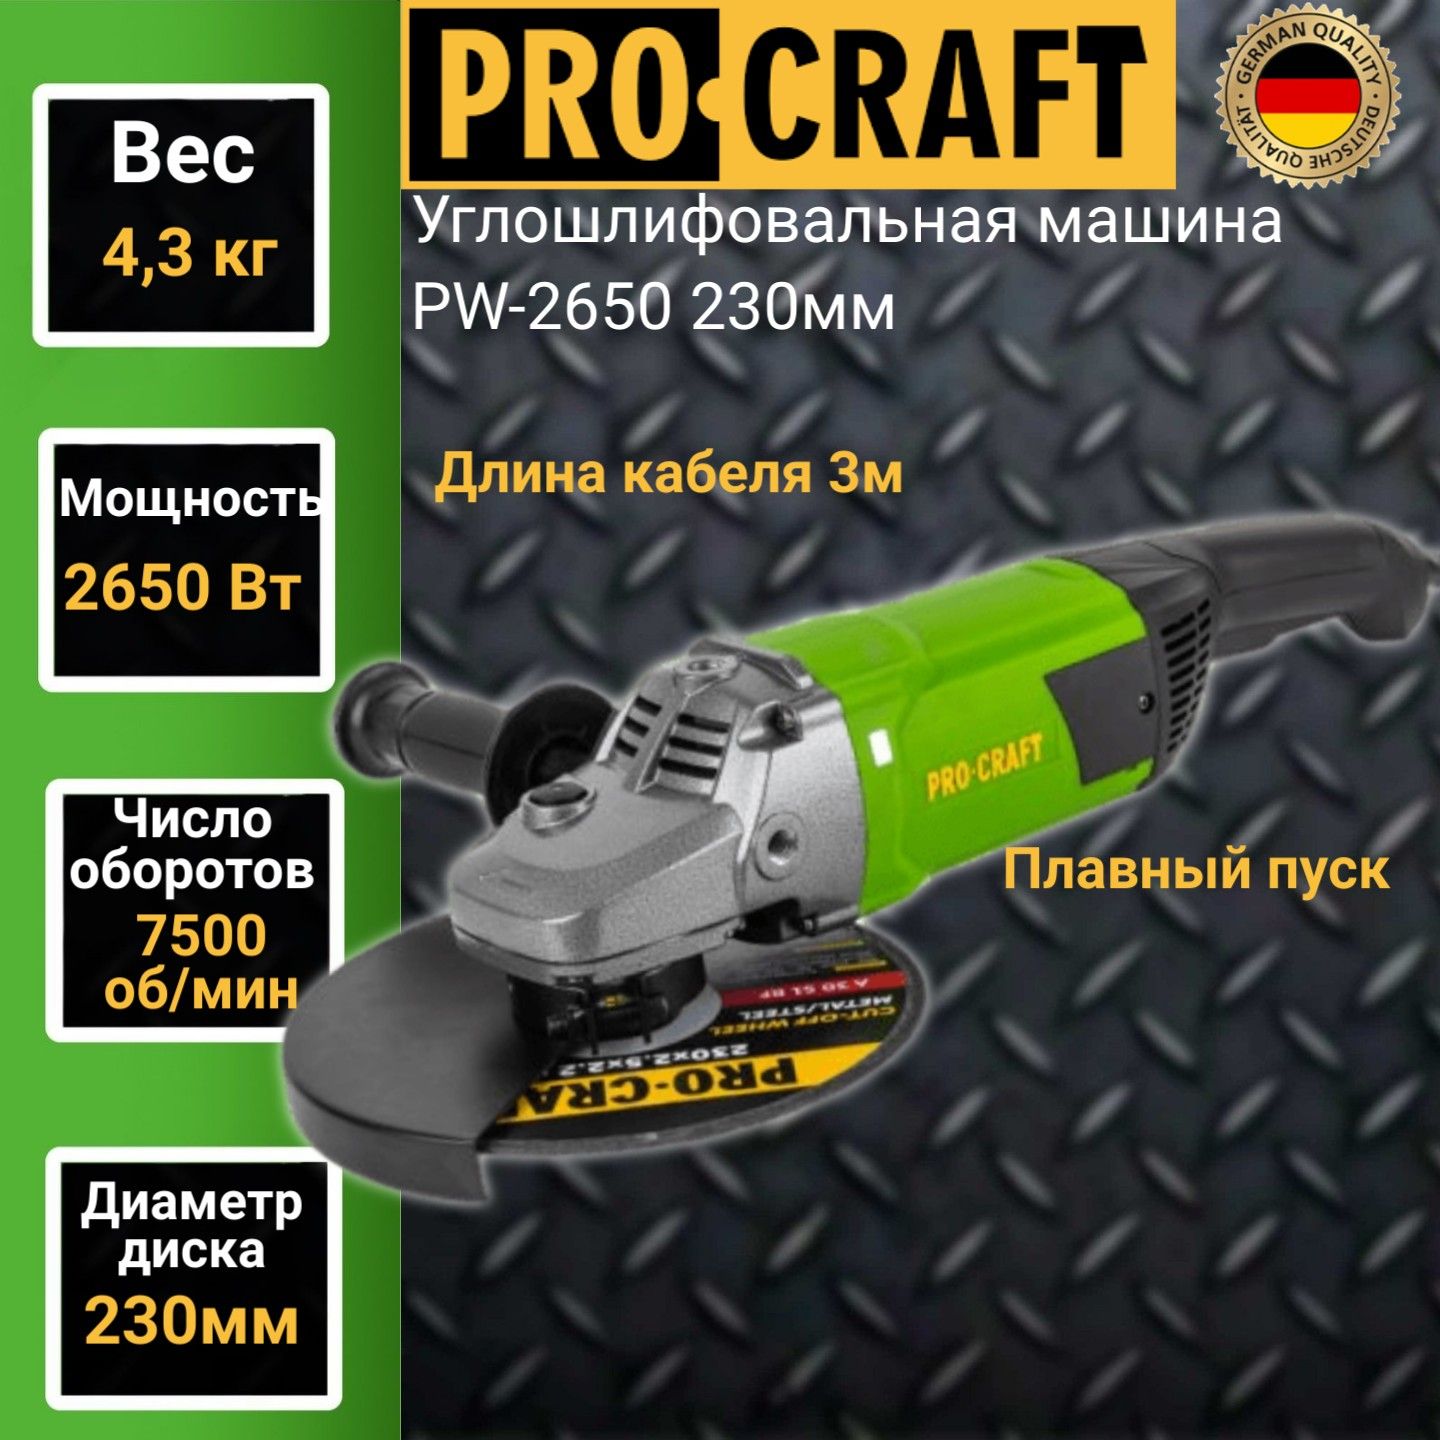 Углошлифовальная машина болгарка Procraft PW 2650, 230мм круг, 2650Вт, 7500об/мин машина полировальная torso 12 в 80 вт 1700 об мин 150 мм провод 4 5 м